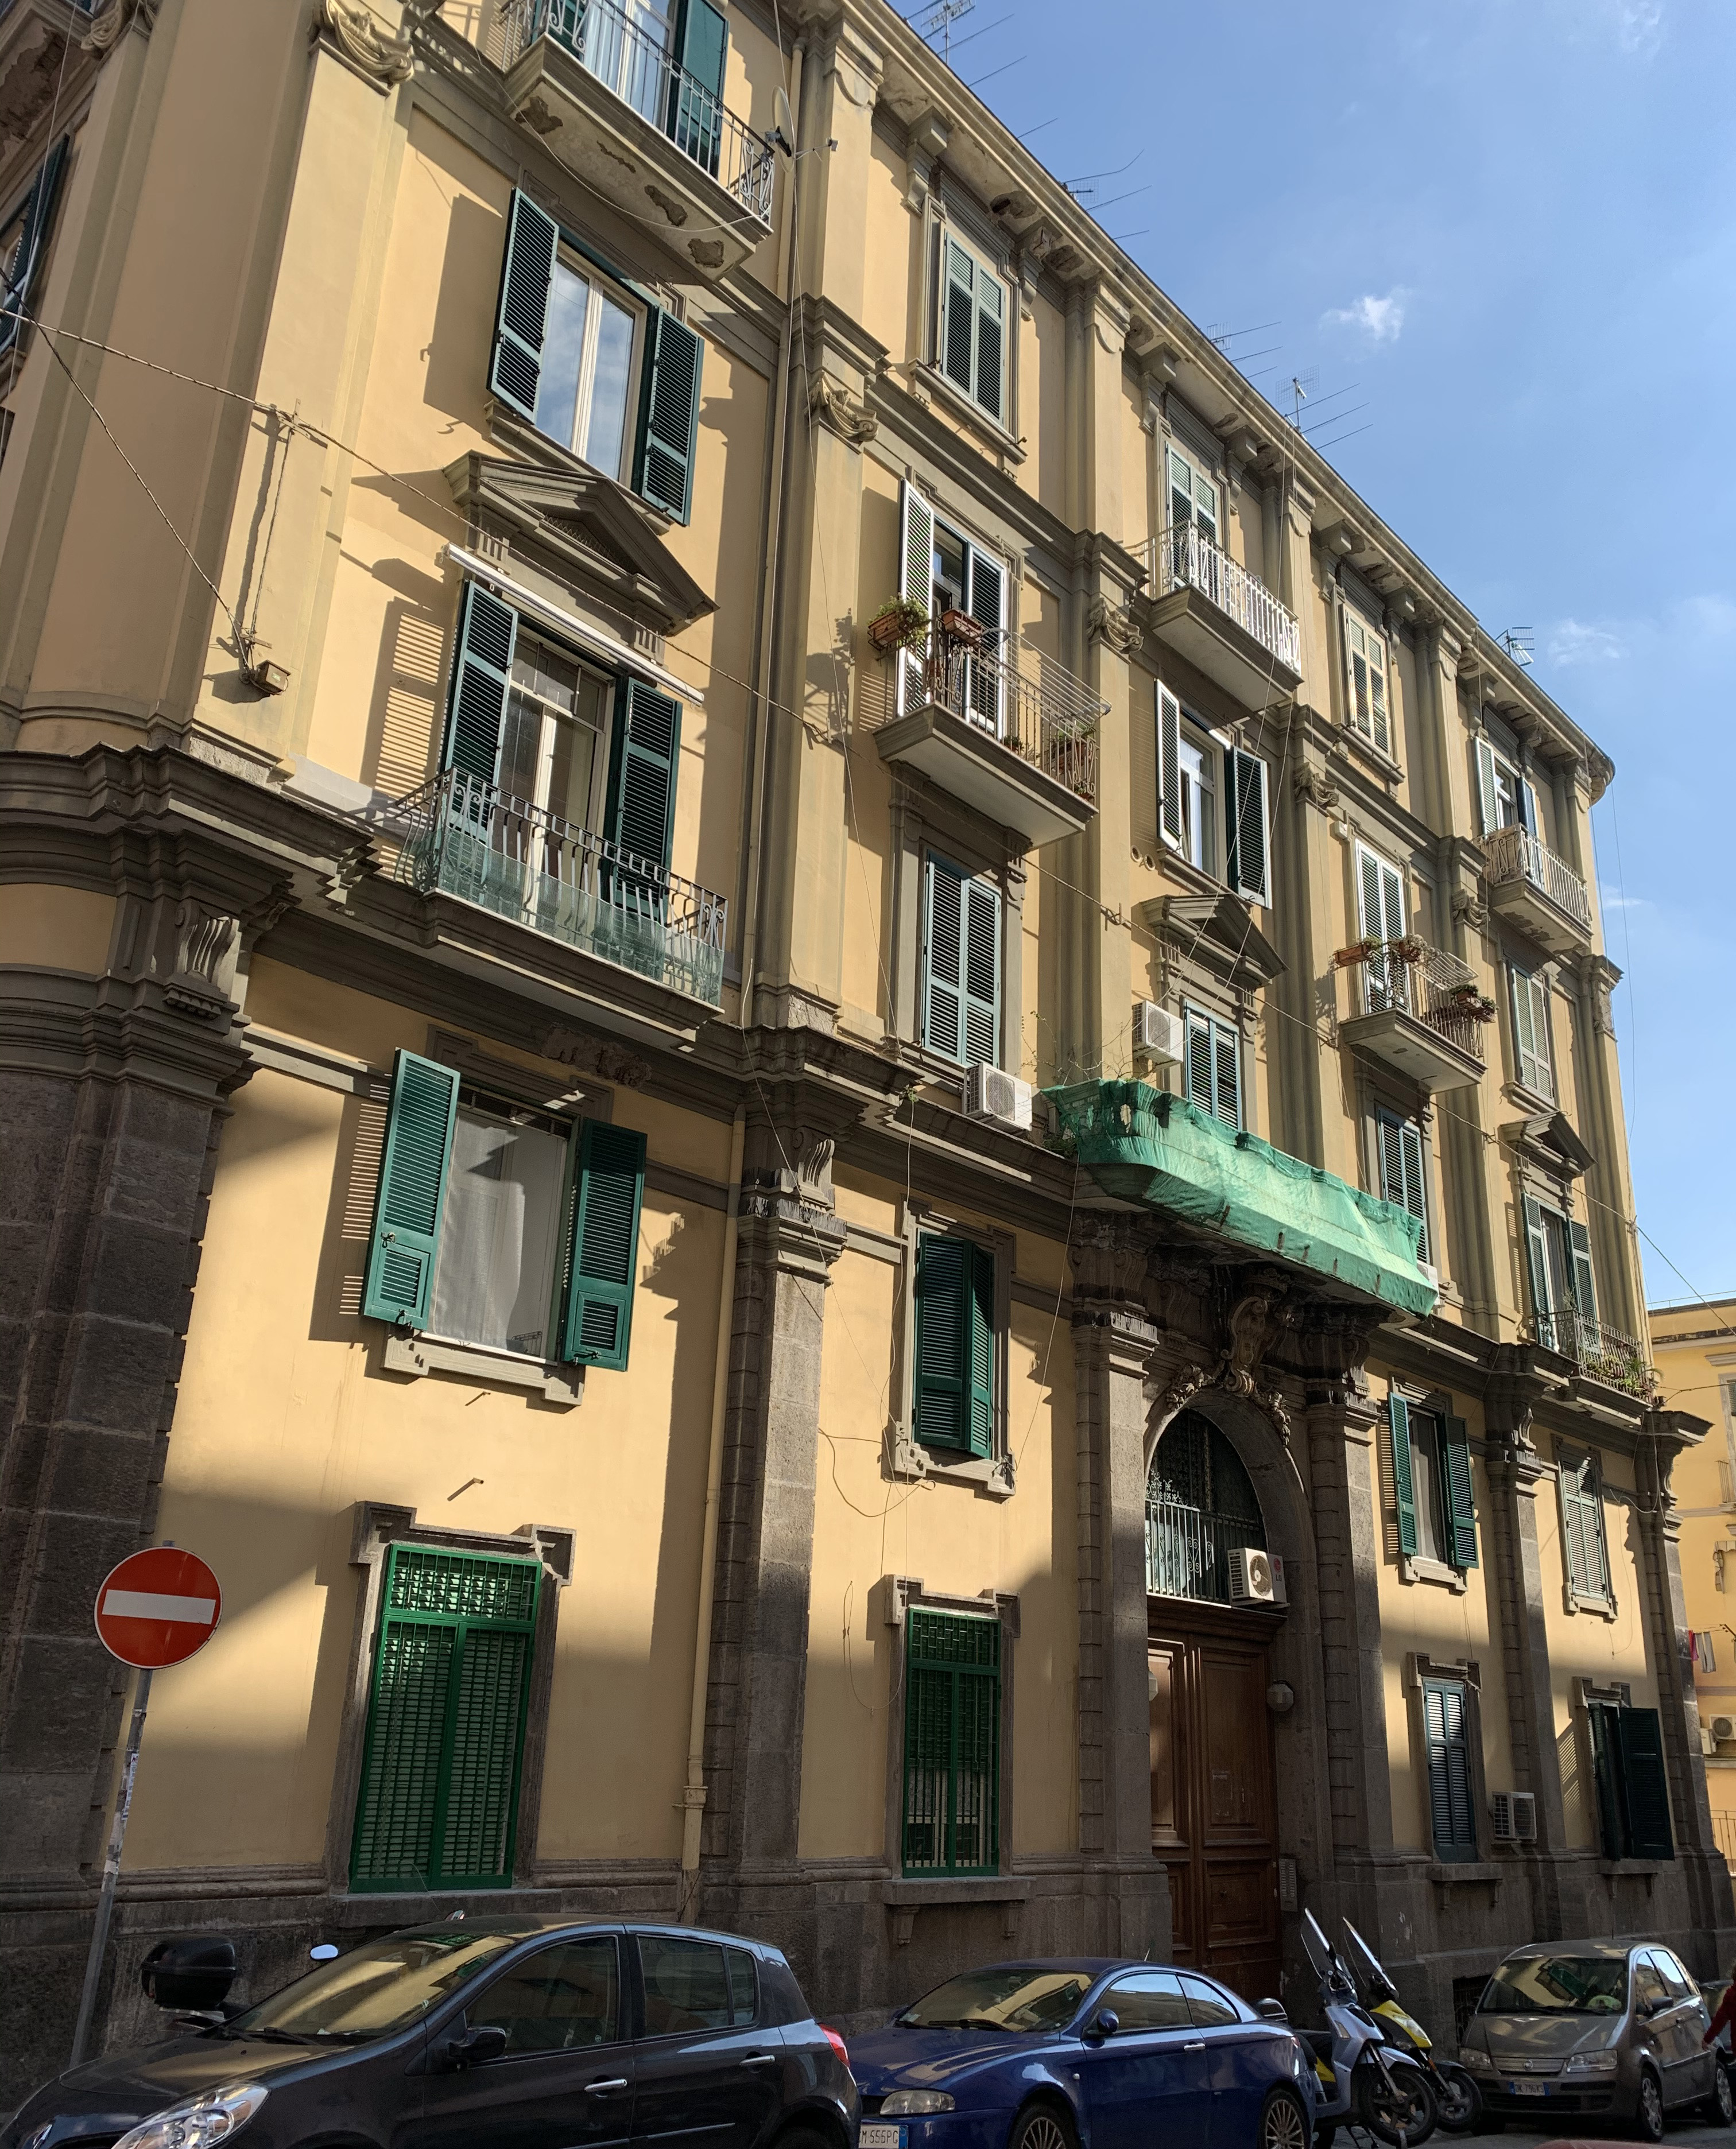 [Palazzo privato in via Goffredo Malaterra, 18] (palazzo, privato) - Napoli (NA)  (XX; XX)